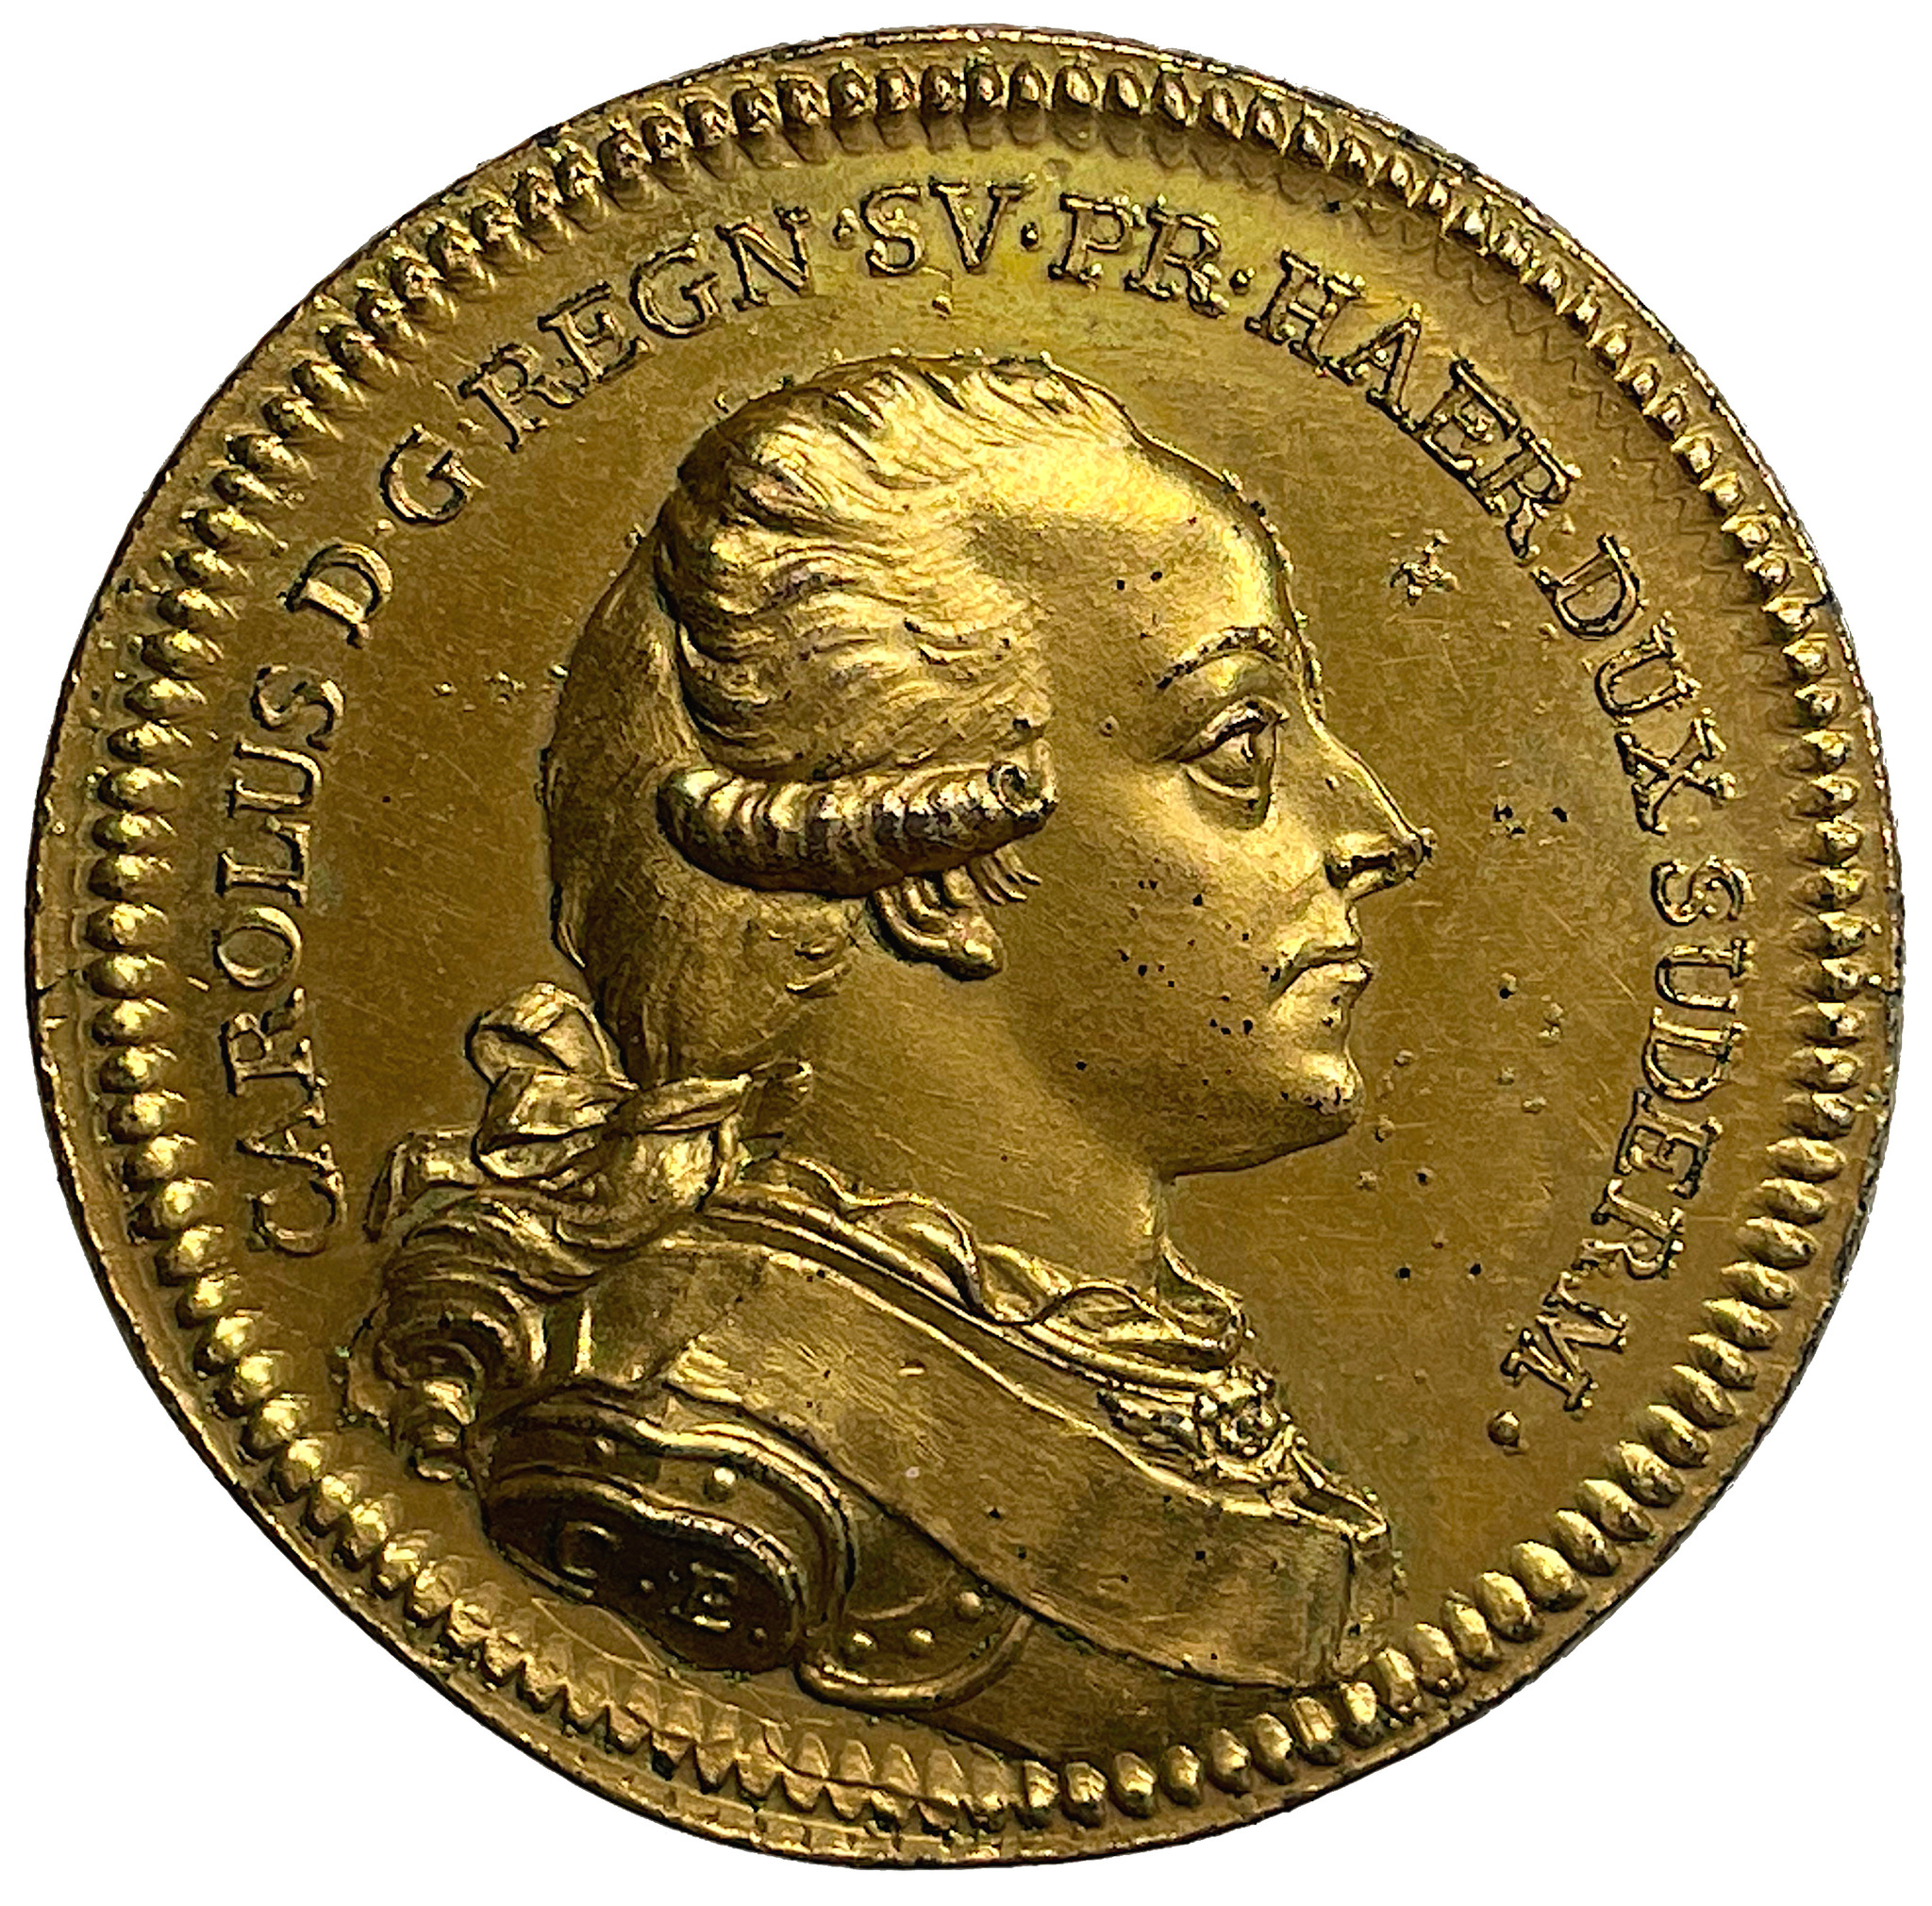 Hertig Karl blir riksföreståndare under Gustav IV Adolfs minderårighet den 29 mars 1792 av Carl Enhörning - Vackert exemplar